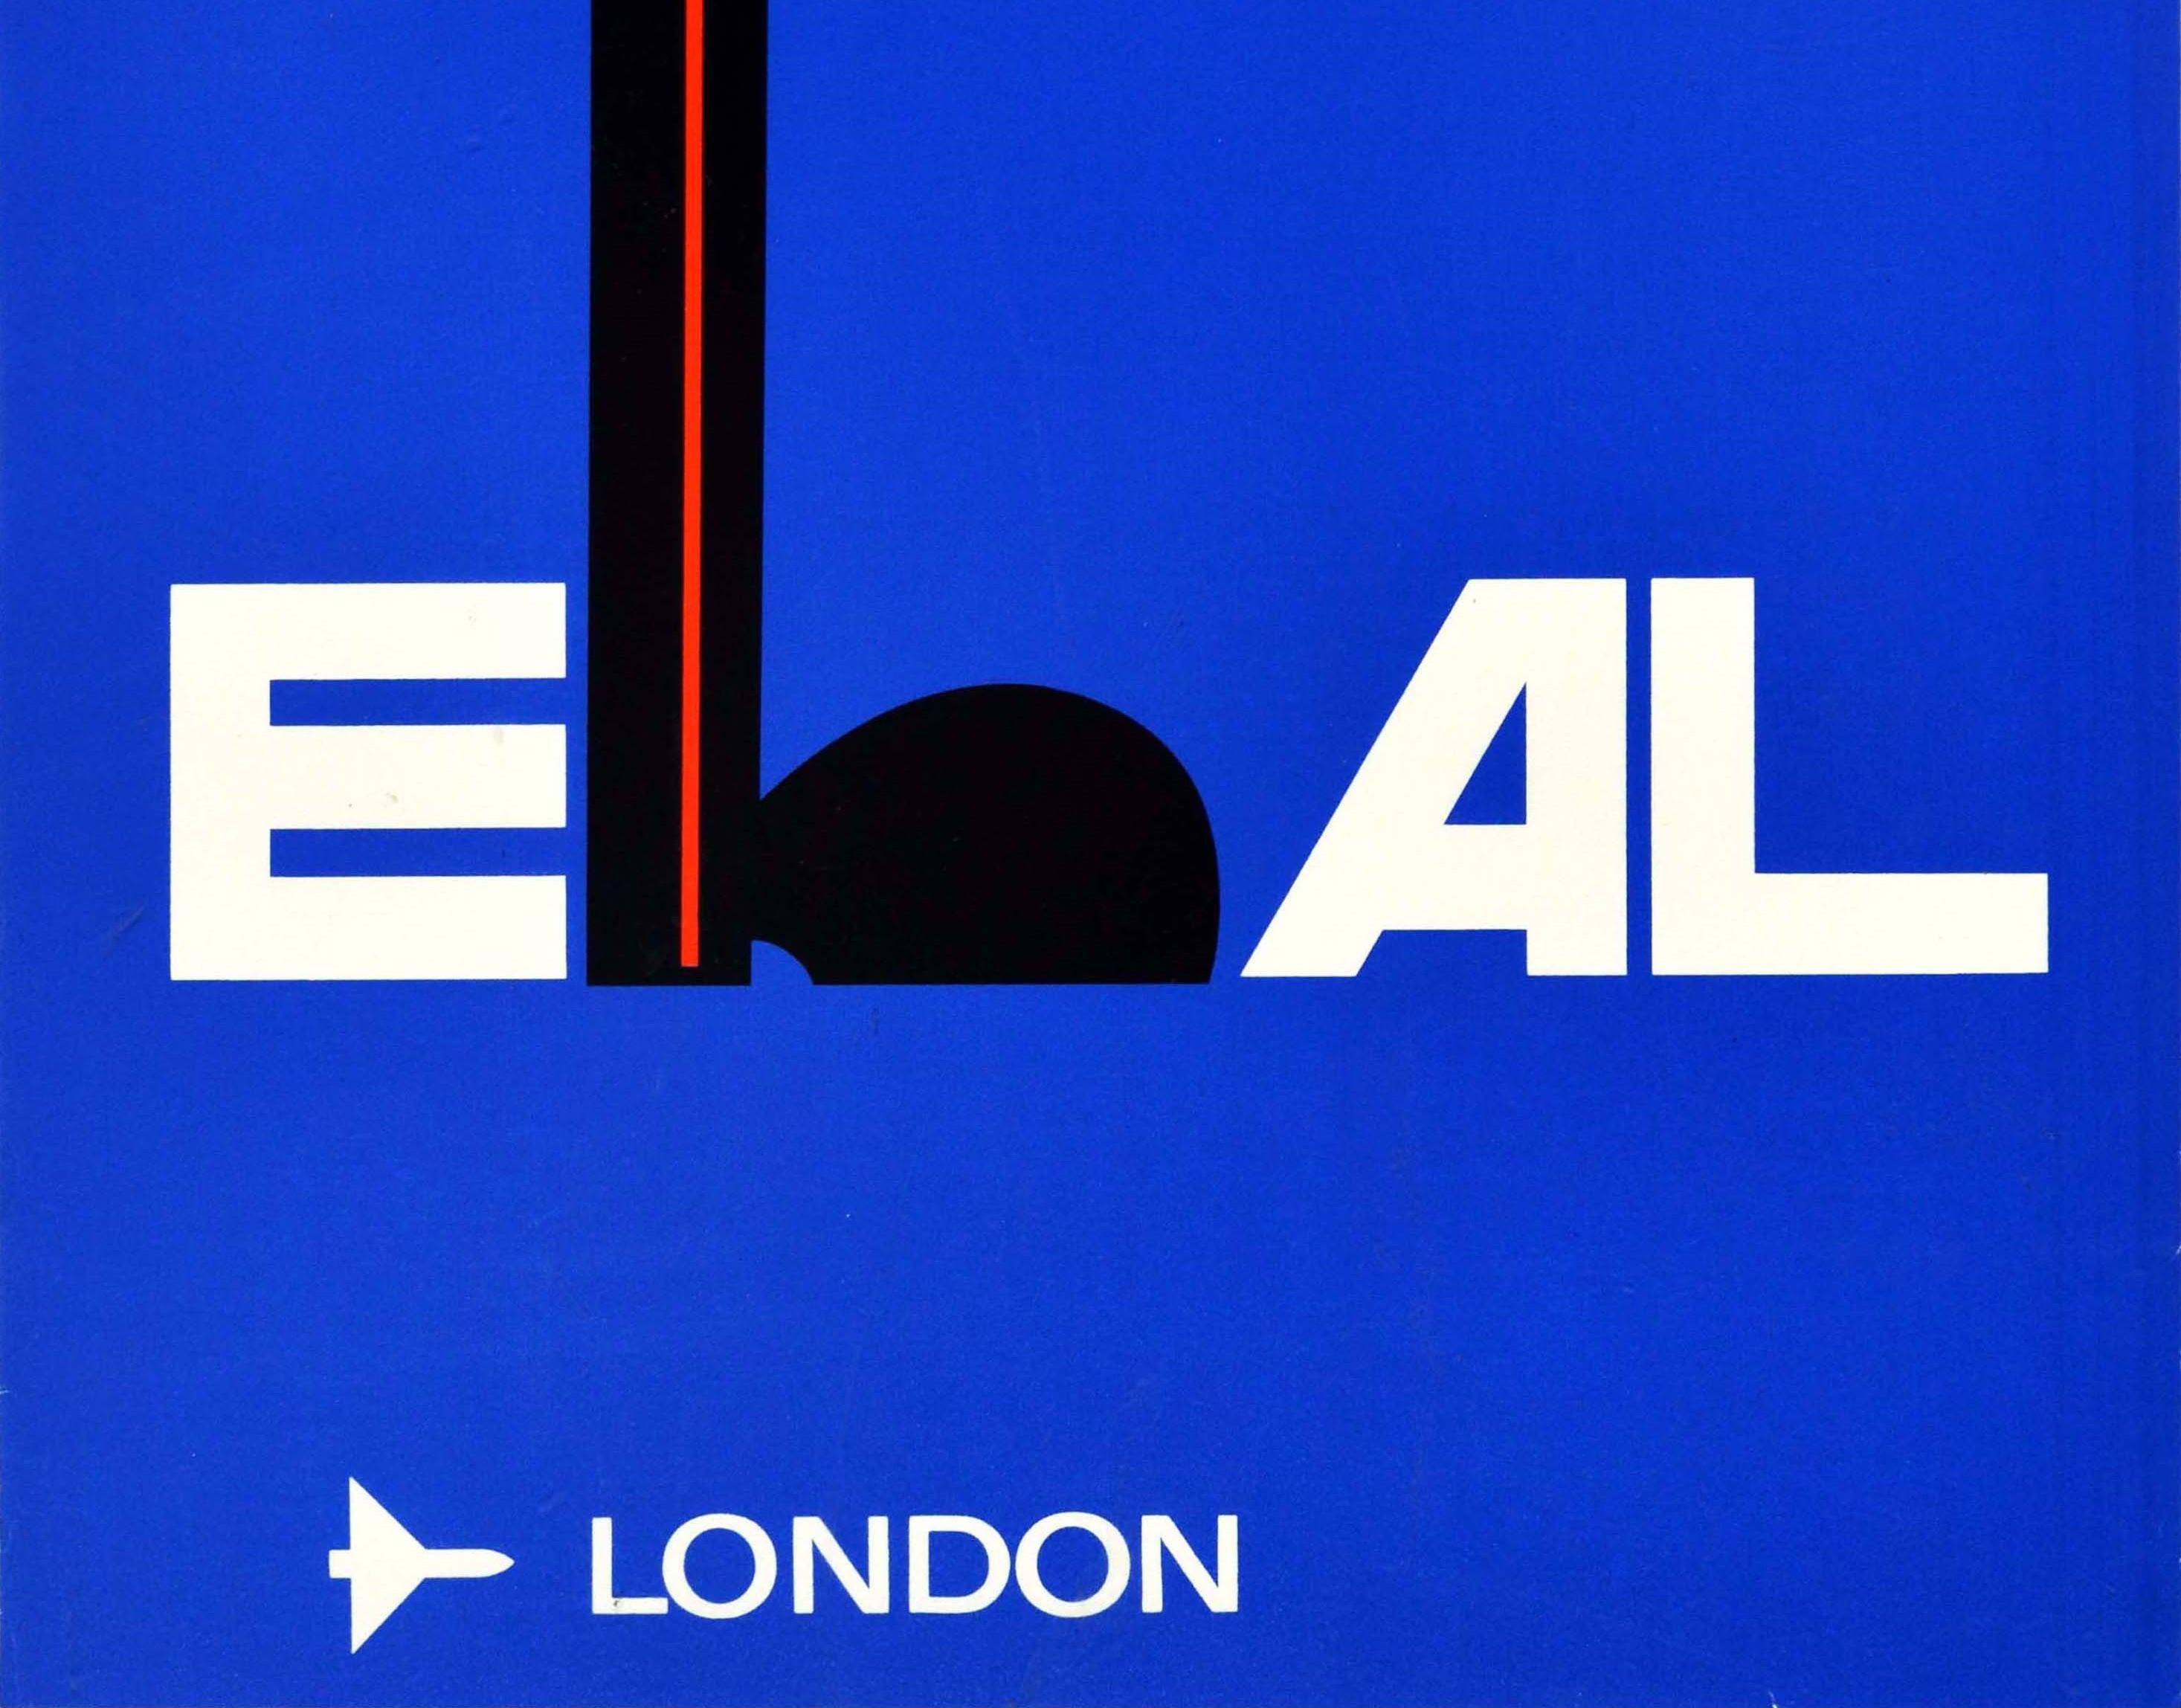 Israeli Original Vintage Travel Poster El Al Israel Airlines London England Royal Guard For Sale